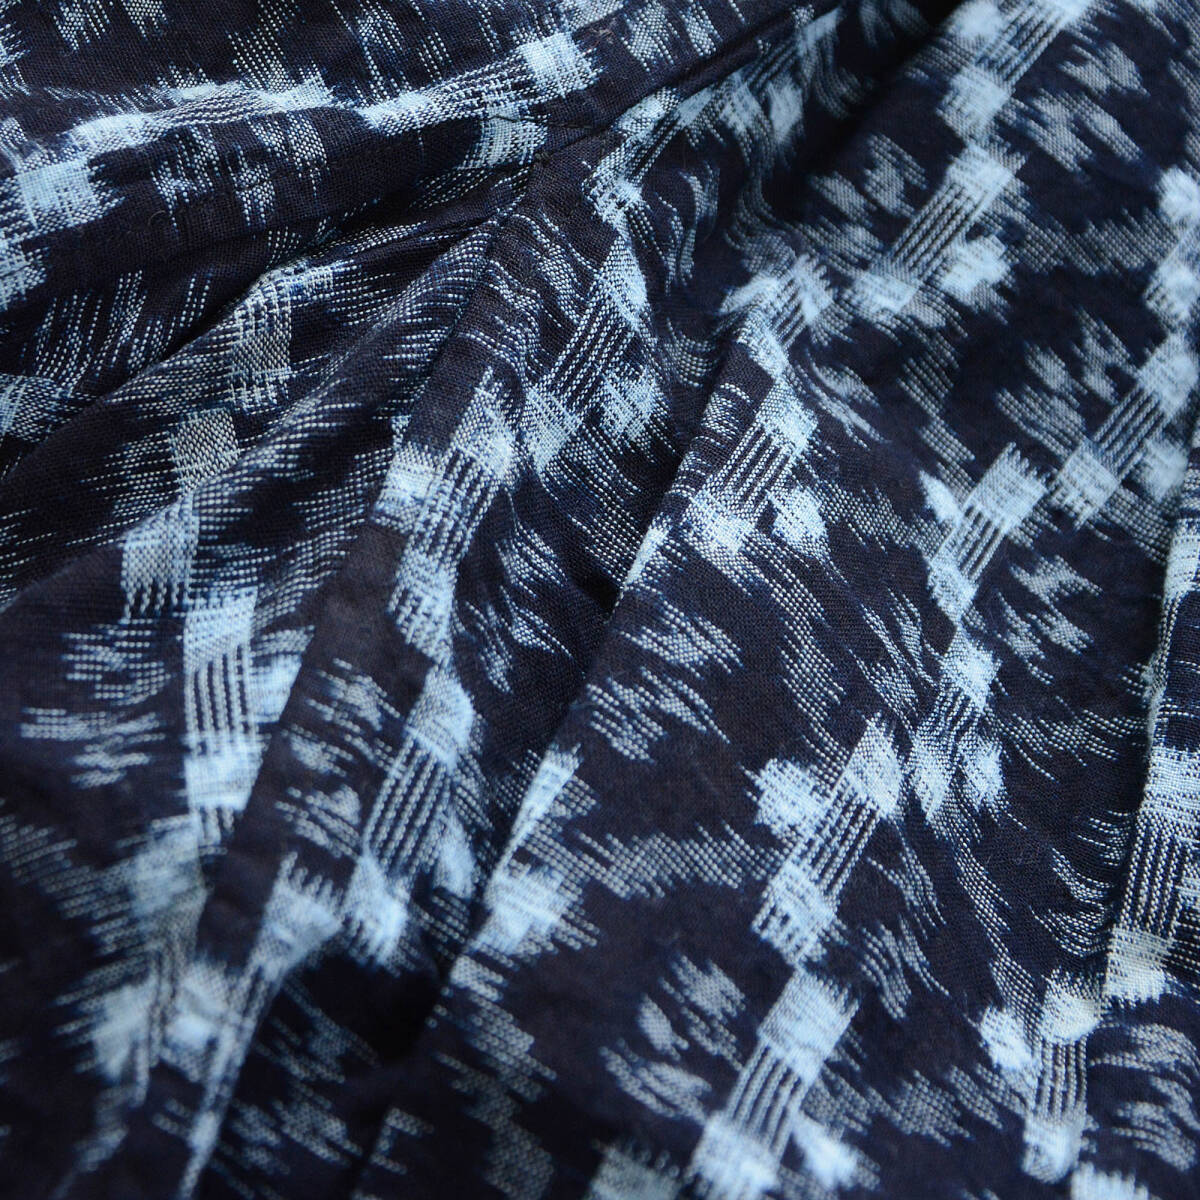 もんぺ 野良着 着物 パンツ 藍染 絣 木綿 ジャパンヴィンテージ 昭和 リメイク素材 monpe noragi pants japanese fabric vintage indigo_画像8